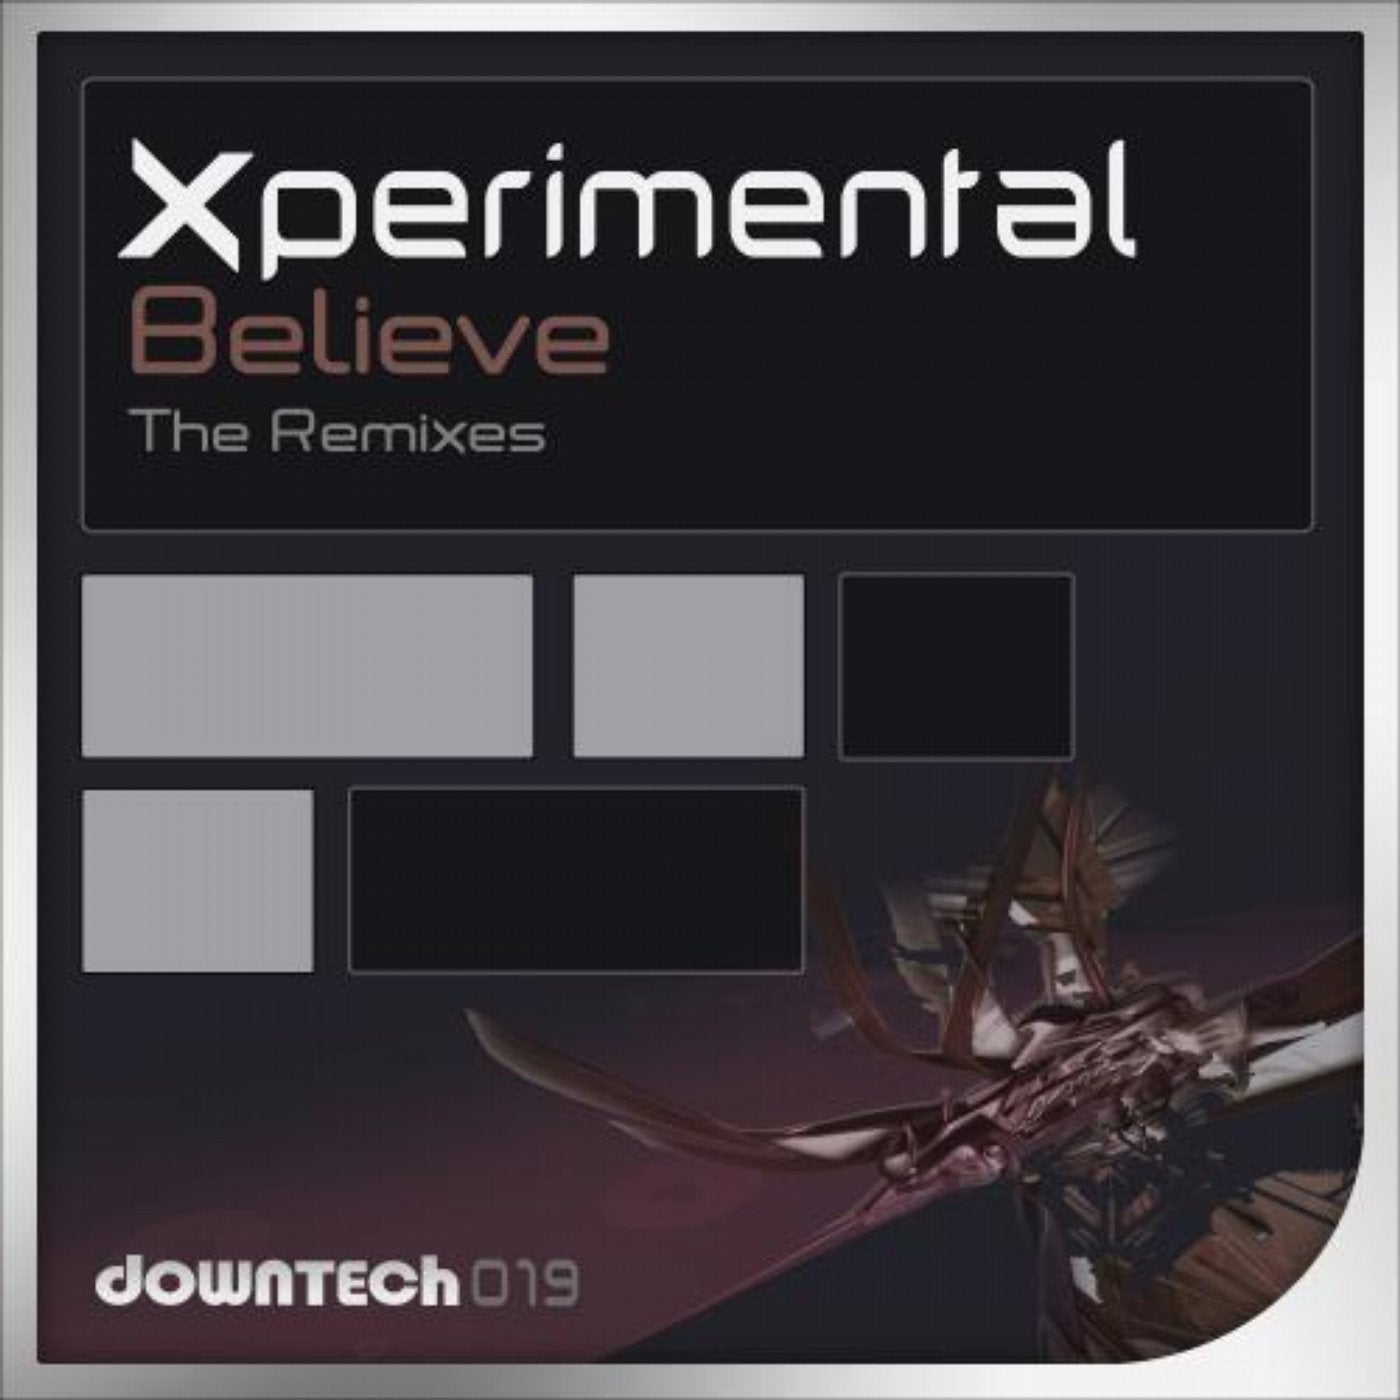 Believe (The Remixes)